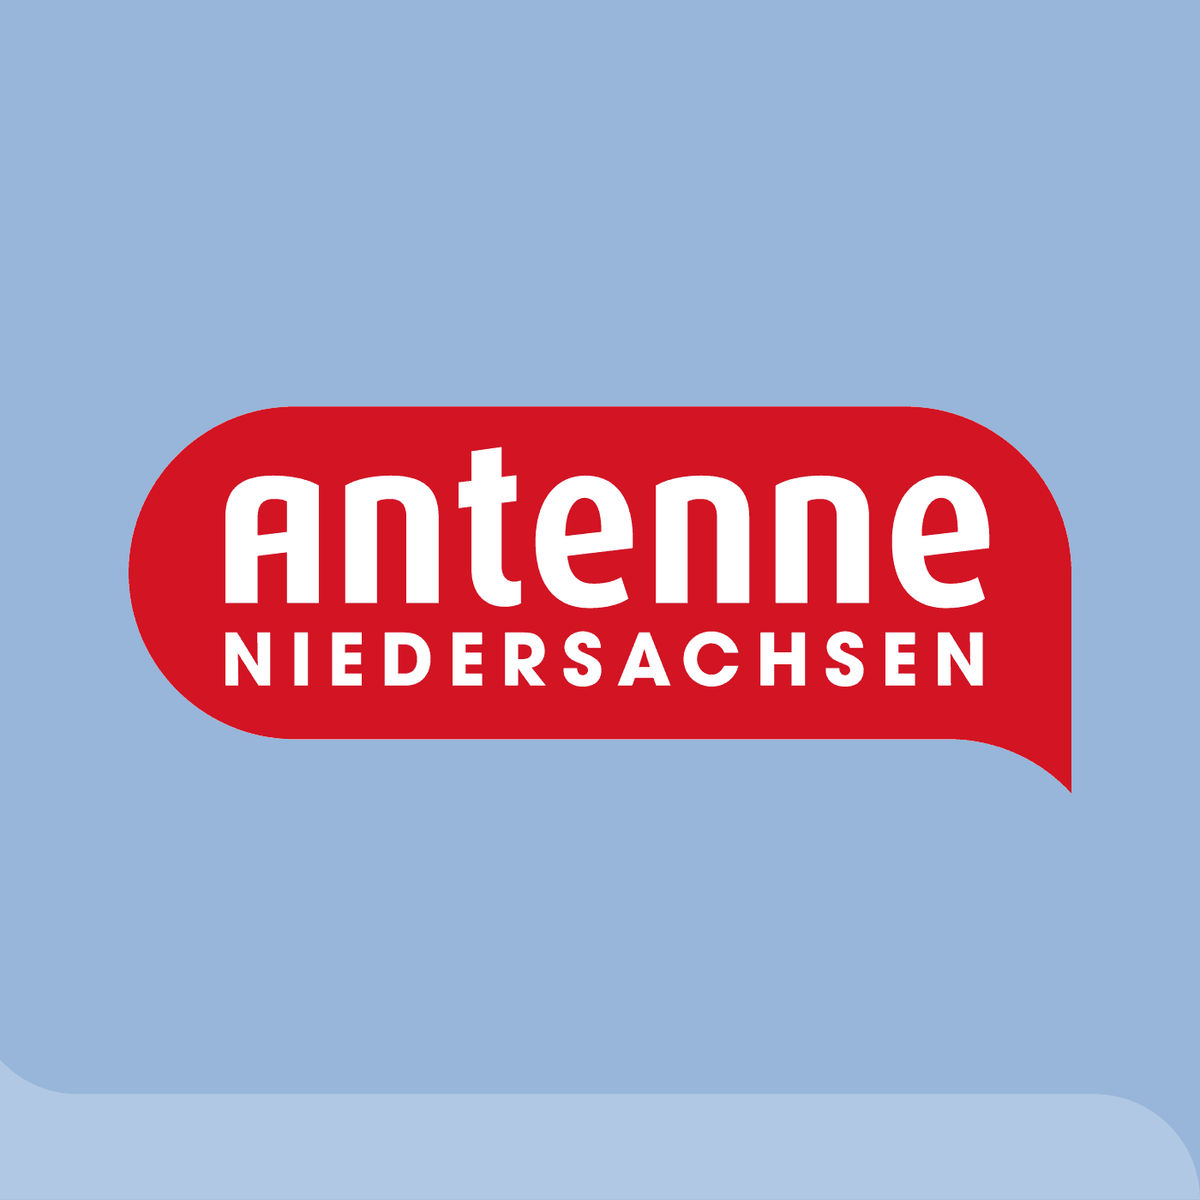 Antenne Niedersachsen-Webradio – jetzt live hören